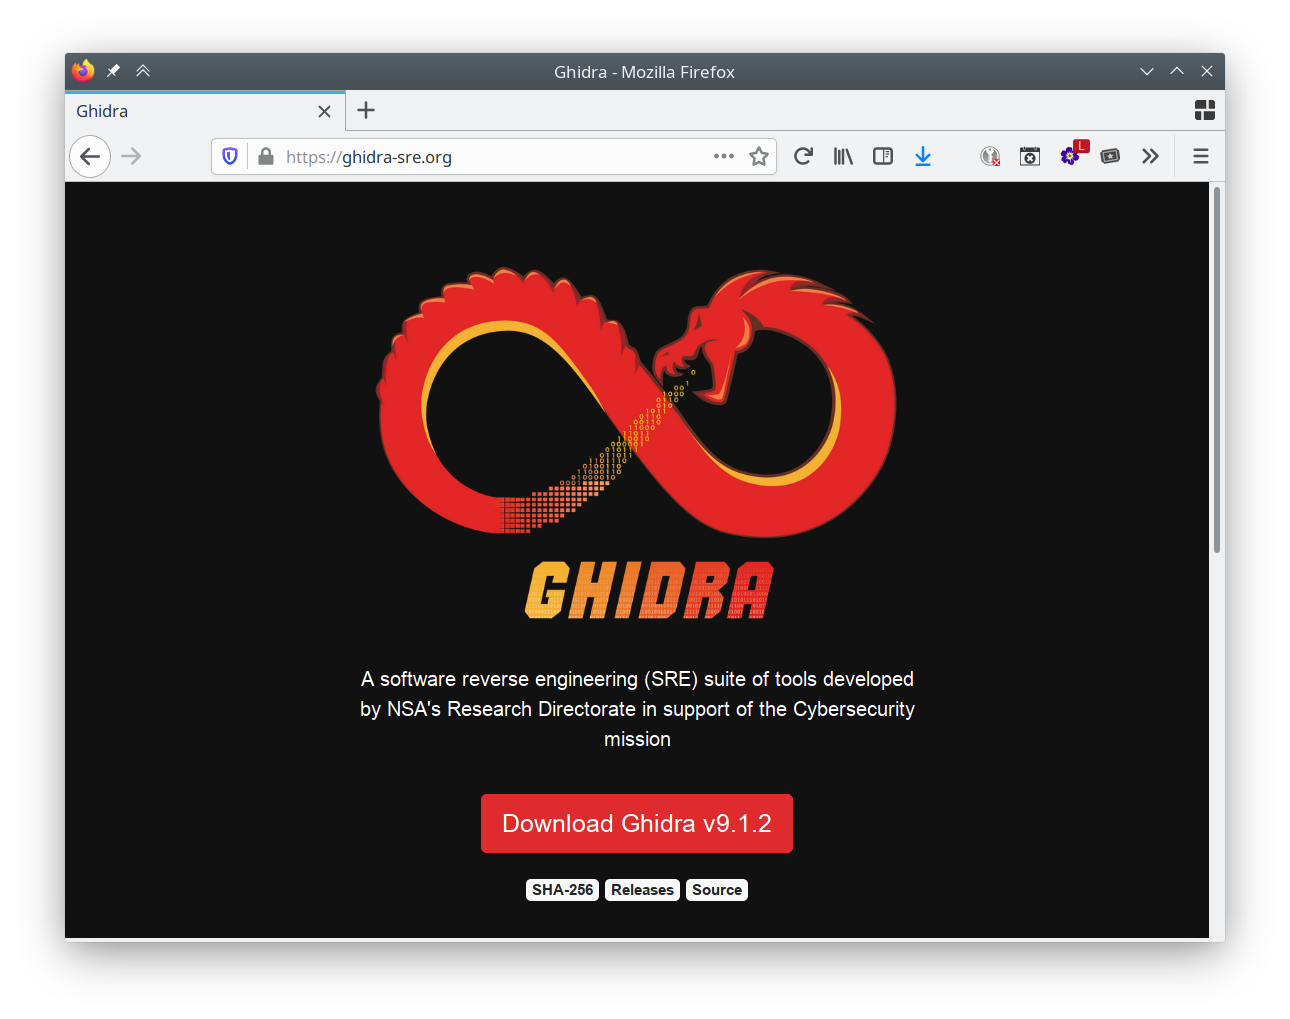 The Ghidra website